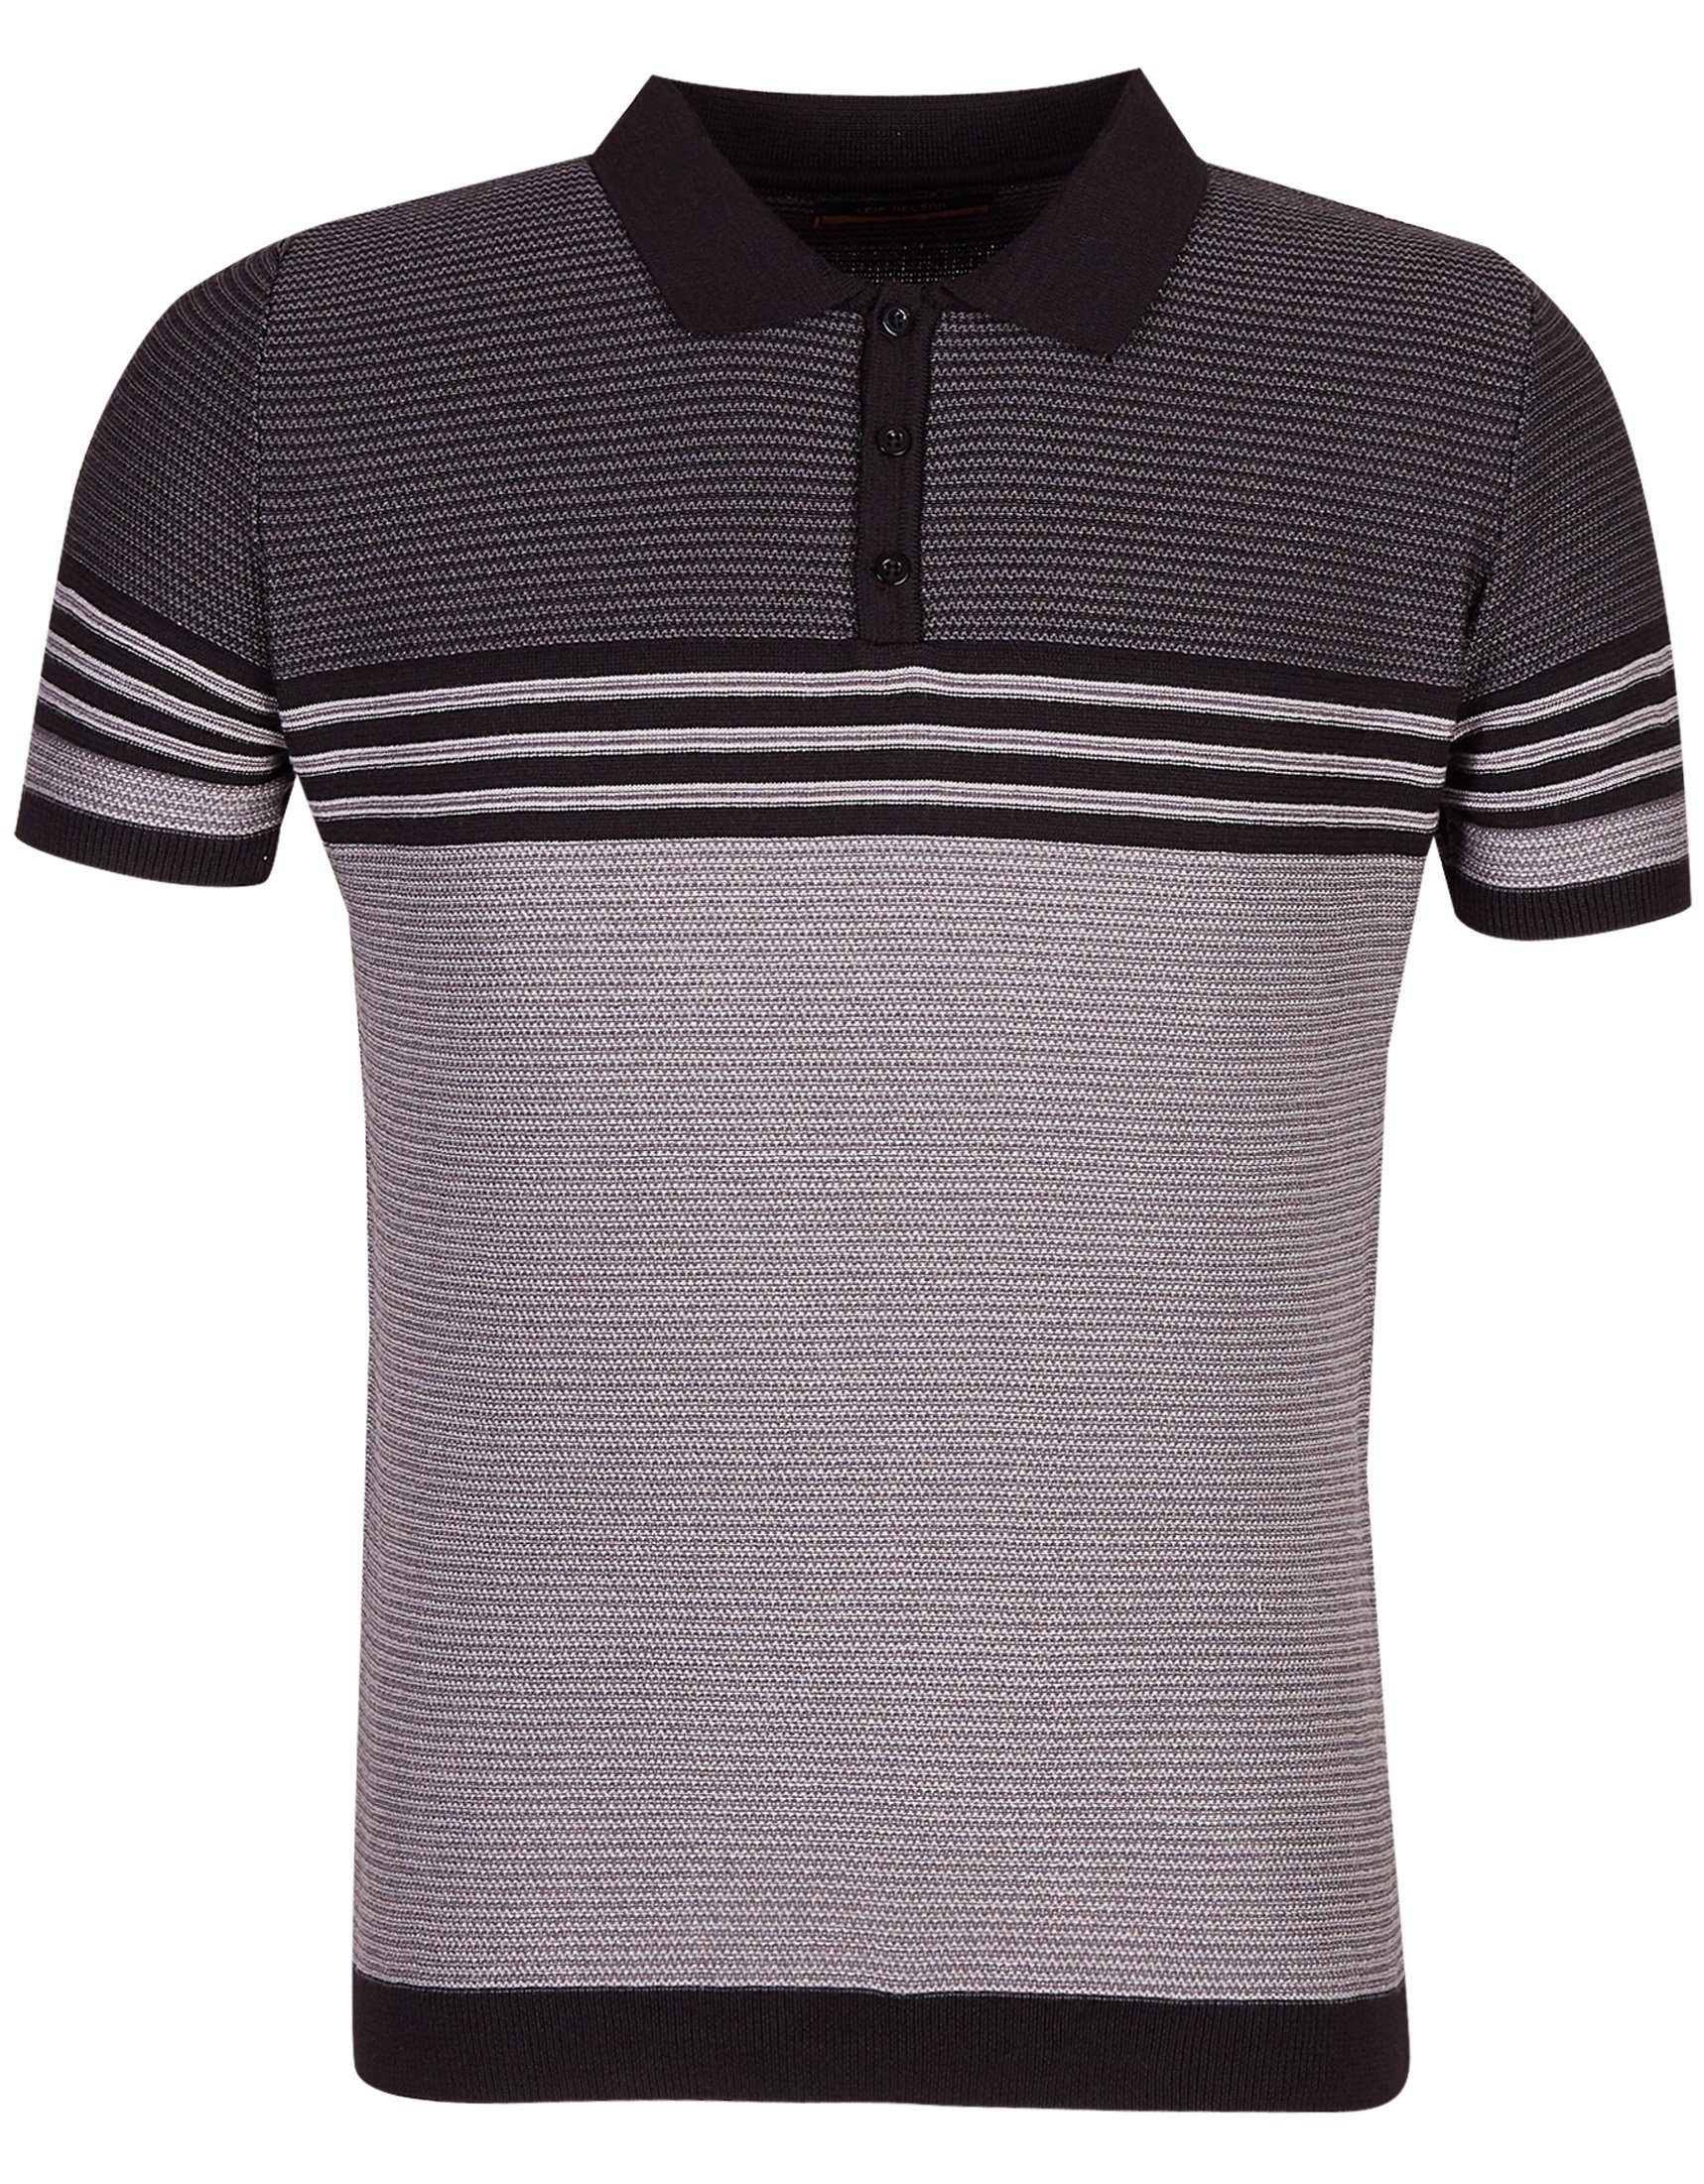 Leif Nelson T-Shirt Feinstrick Polo LN-7640 schwarz-dunkelgrau